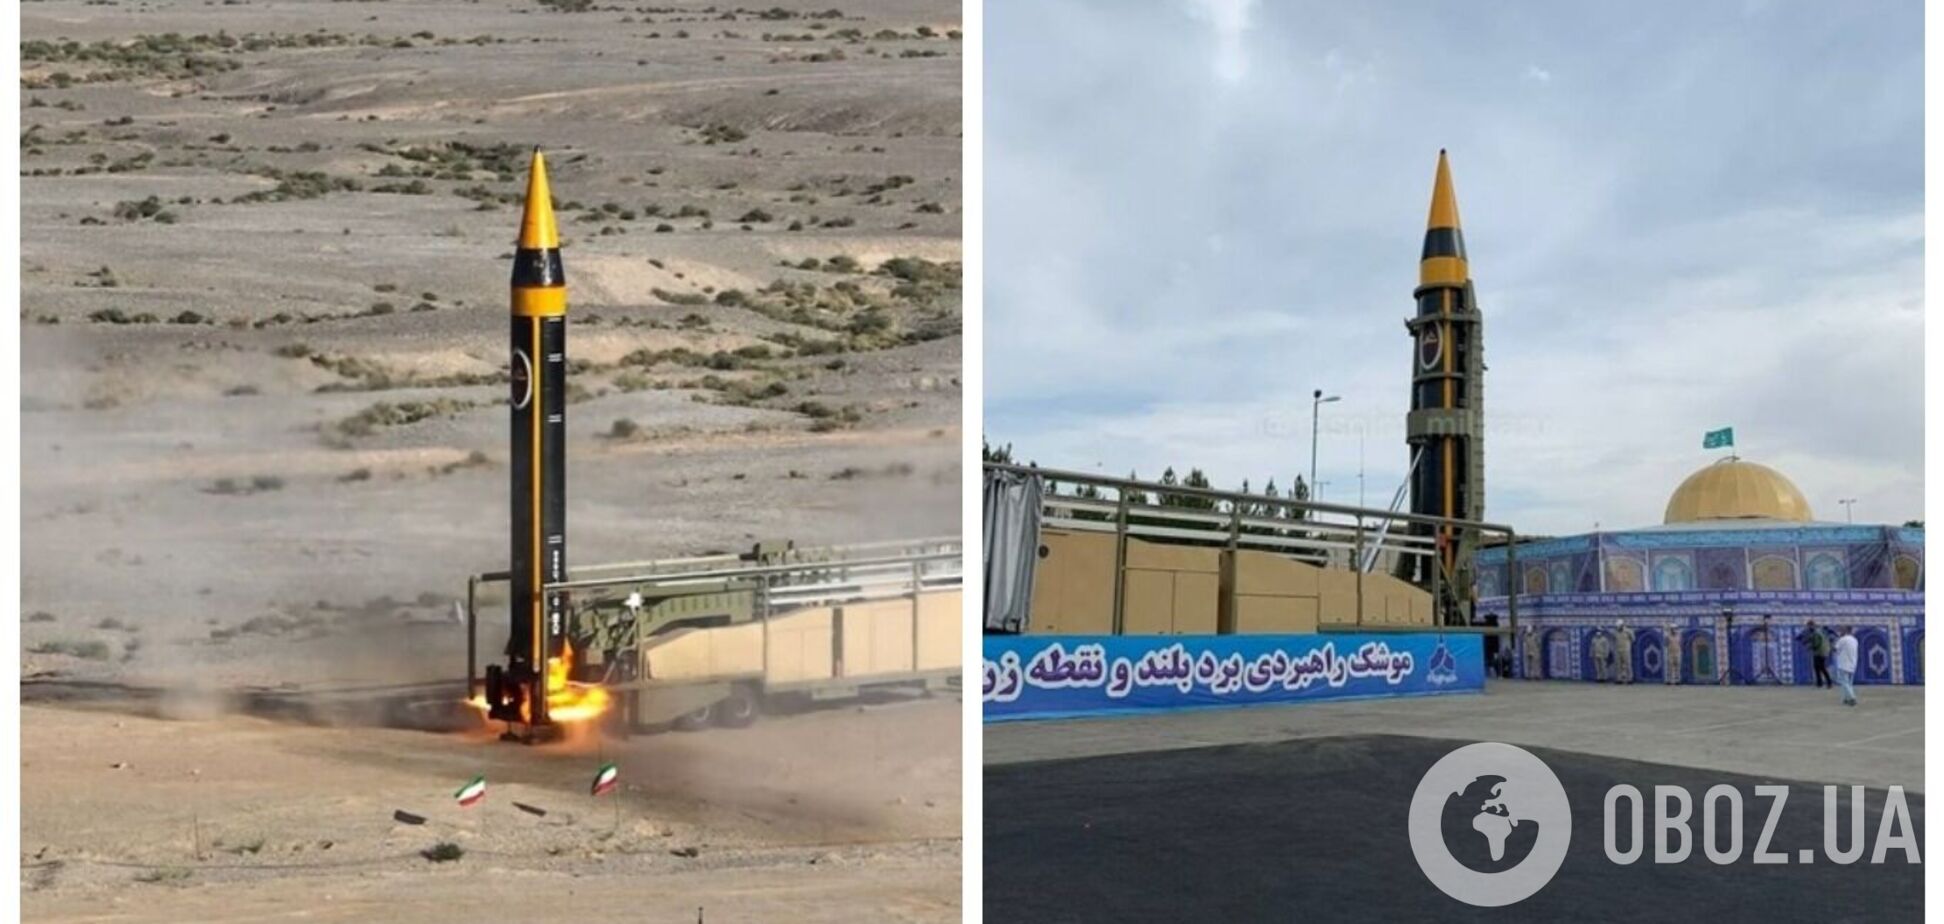 Иран представил новую баллистическую ракету 'Хайбар' с дальностью 2000 км: что известно о разработке. Видео